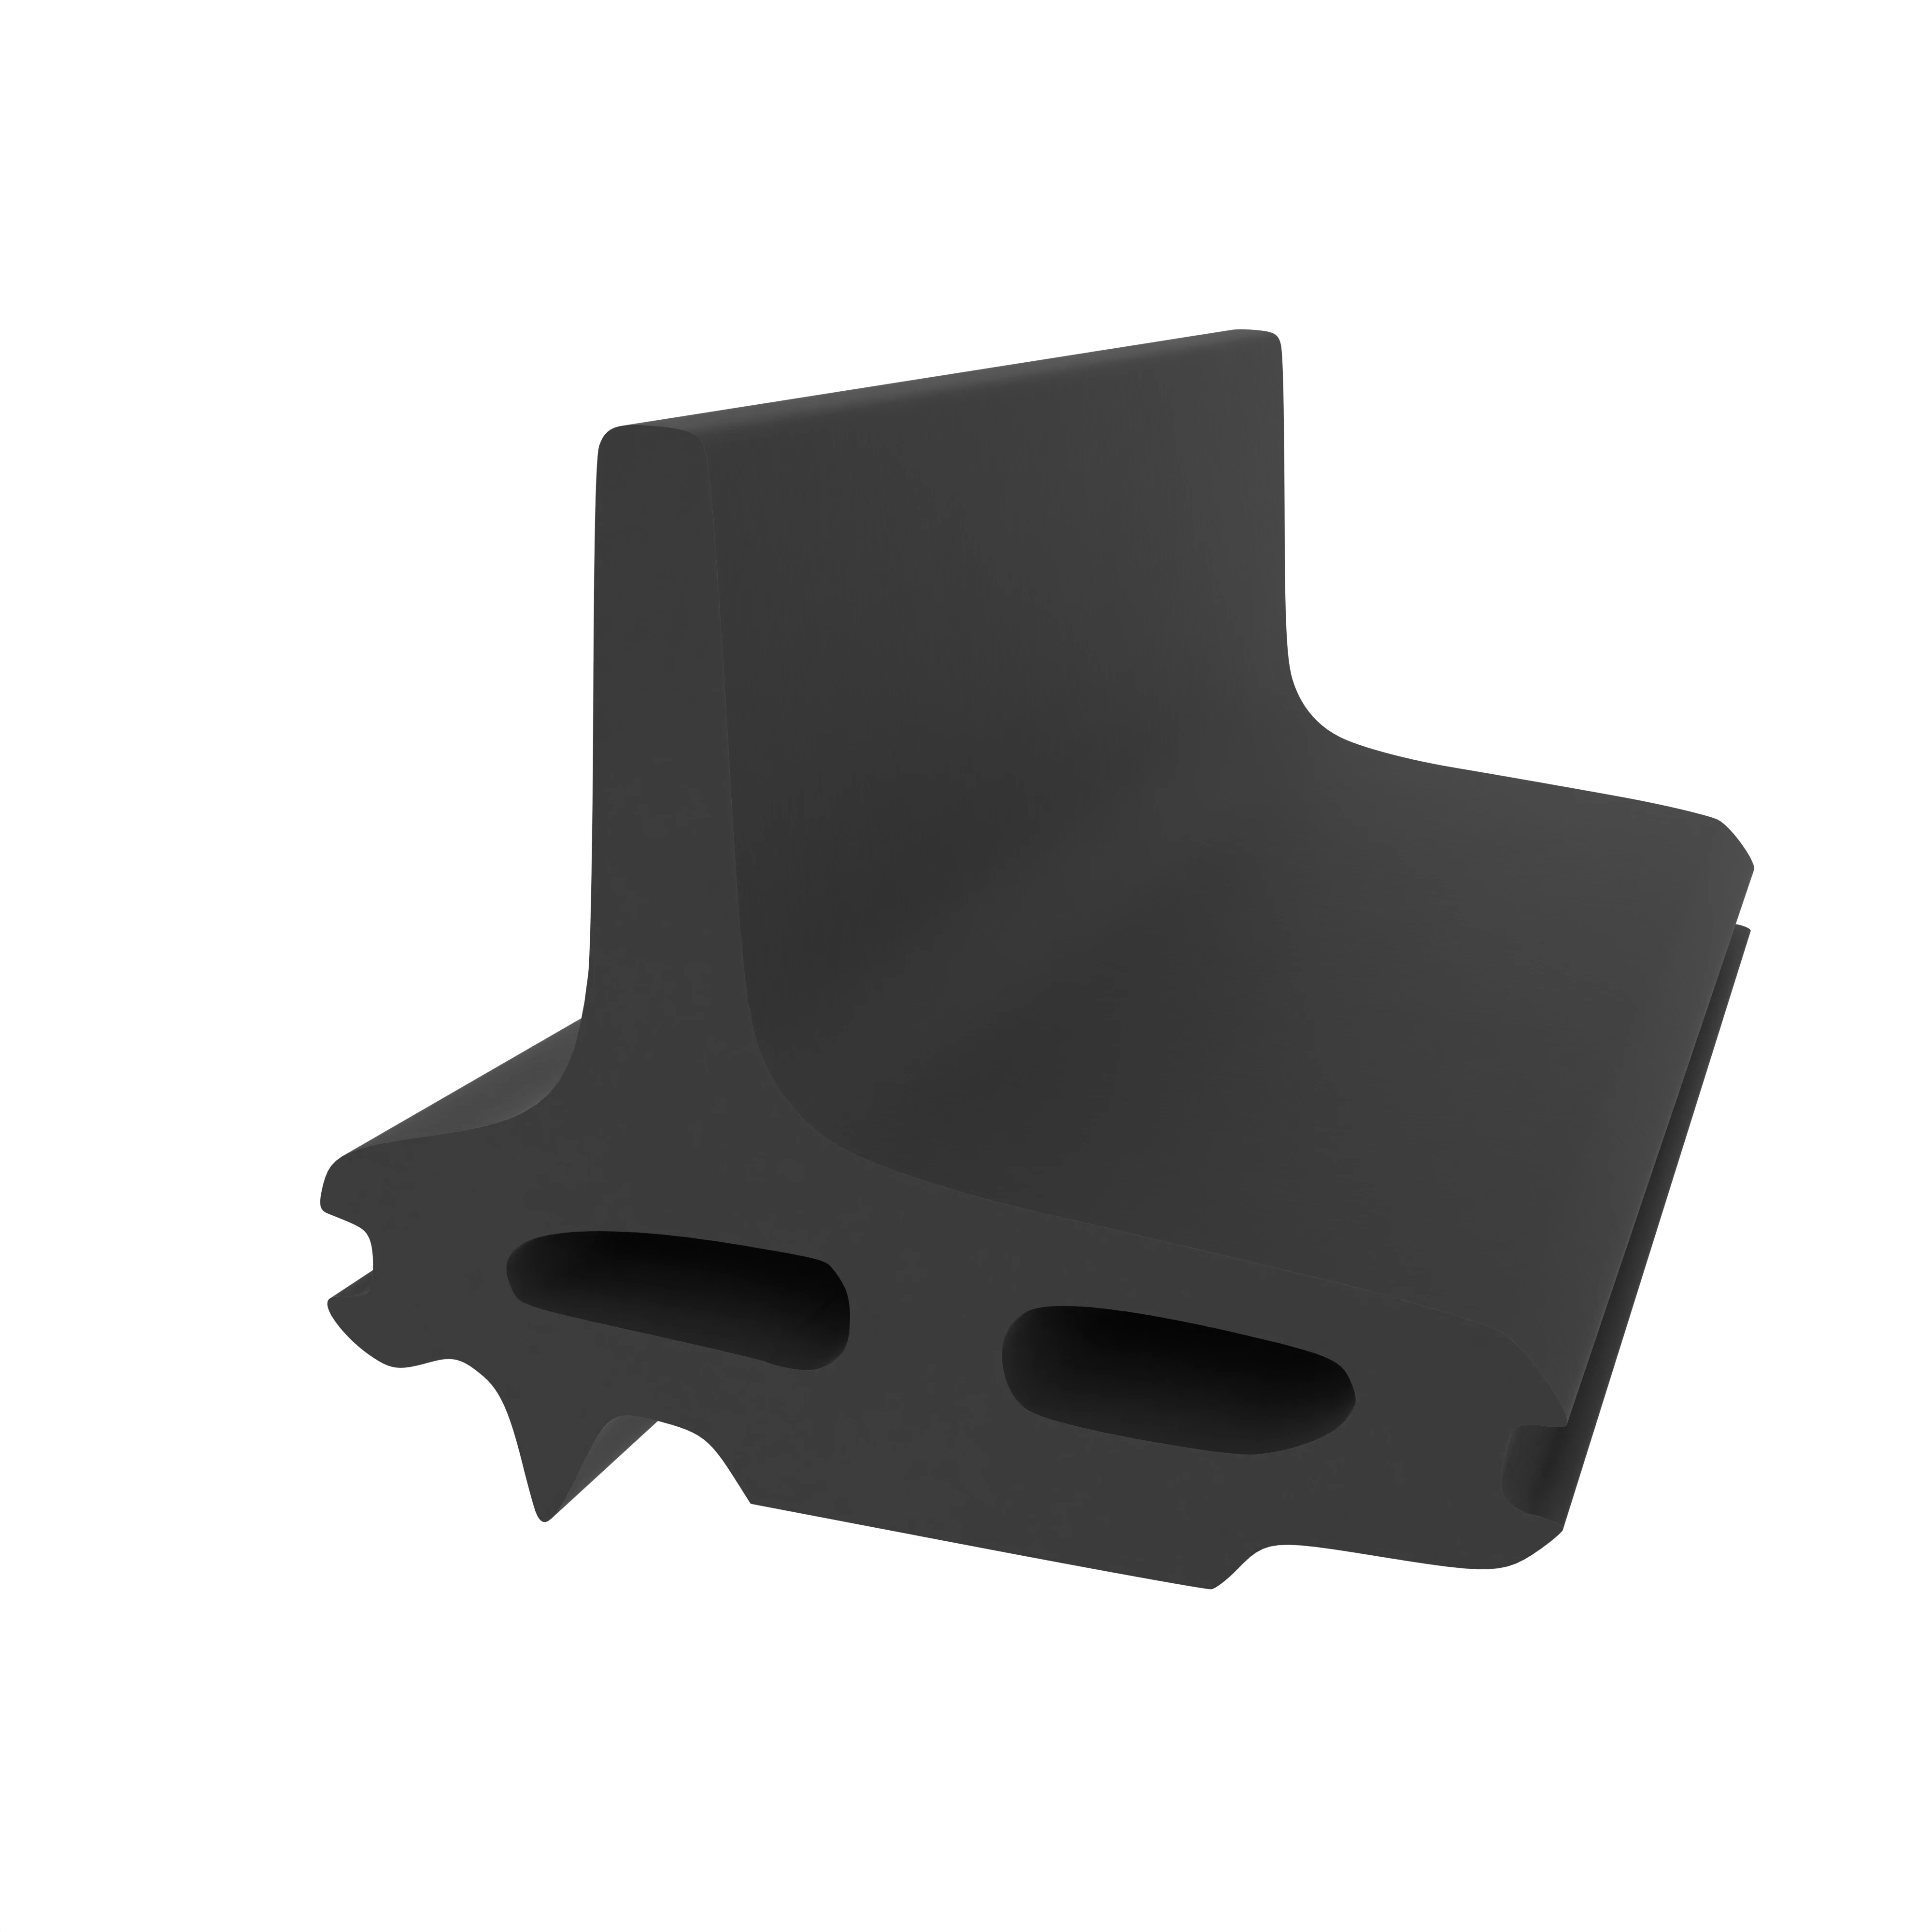 Mitteldichtung für Metall- und Alufenster | 23 mm Höhe | Farbe: schwarz